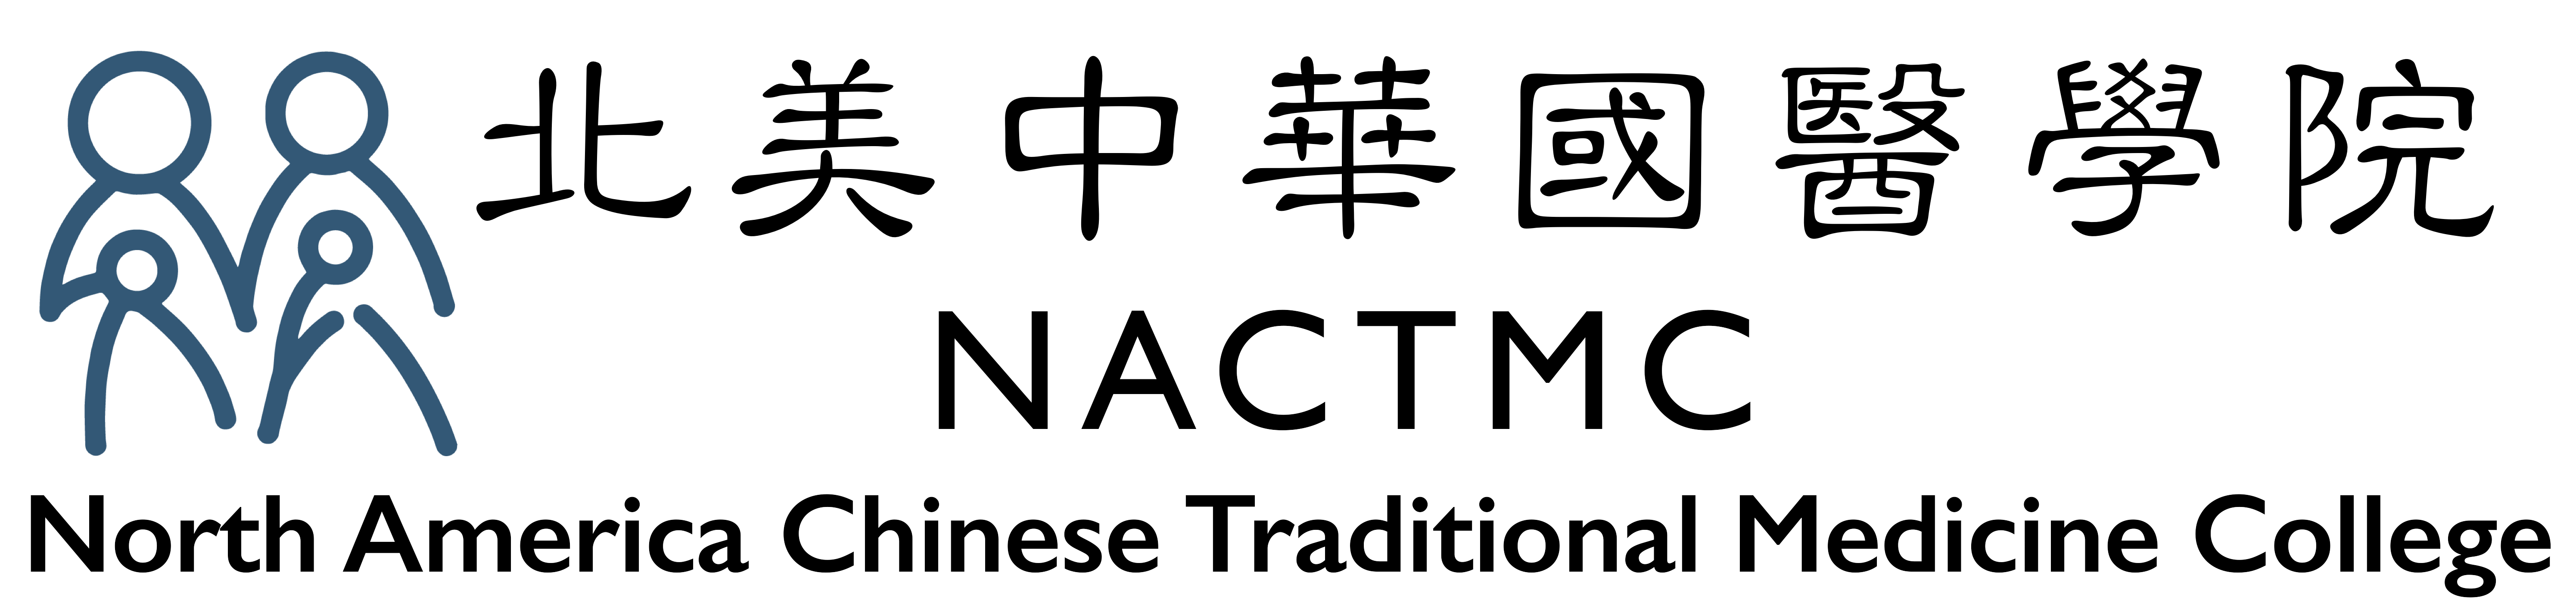 北美中華國醫學院 | North America Chinese Traditional Medicine College